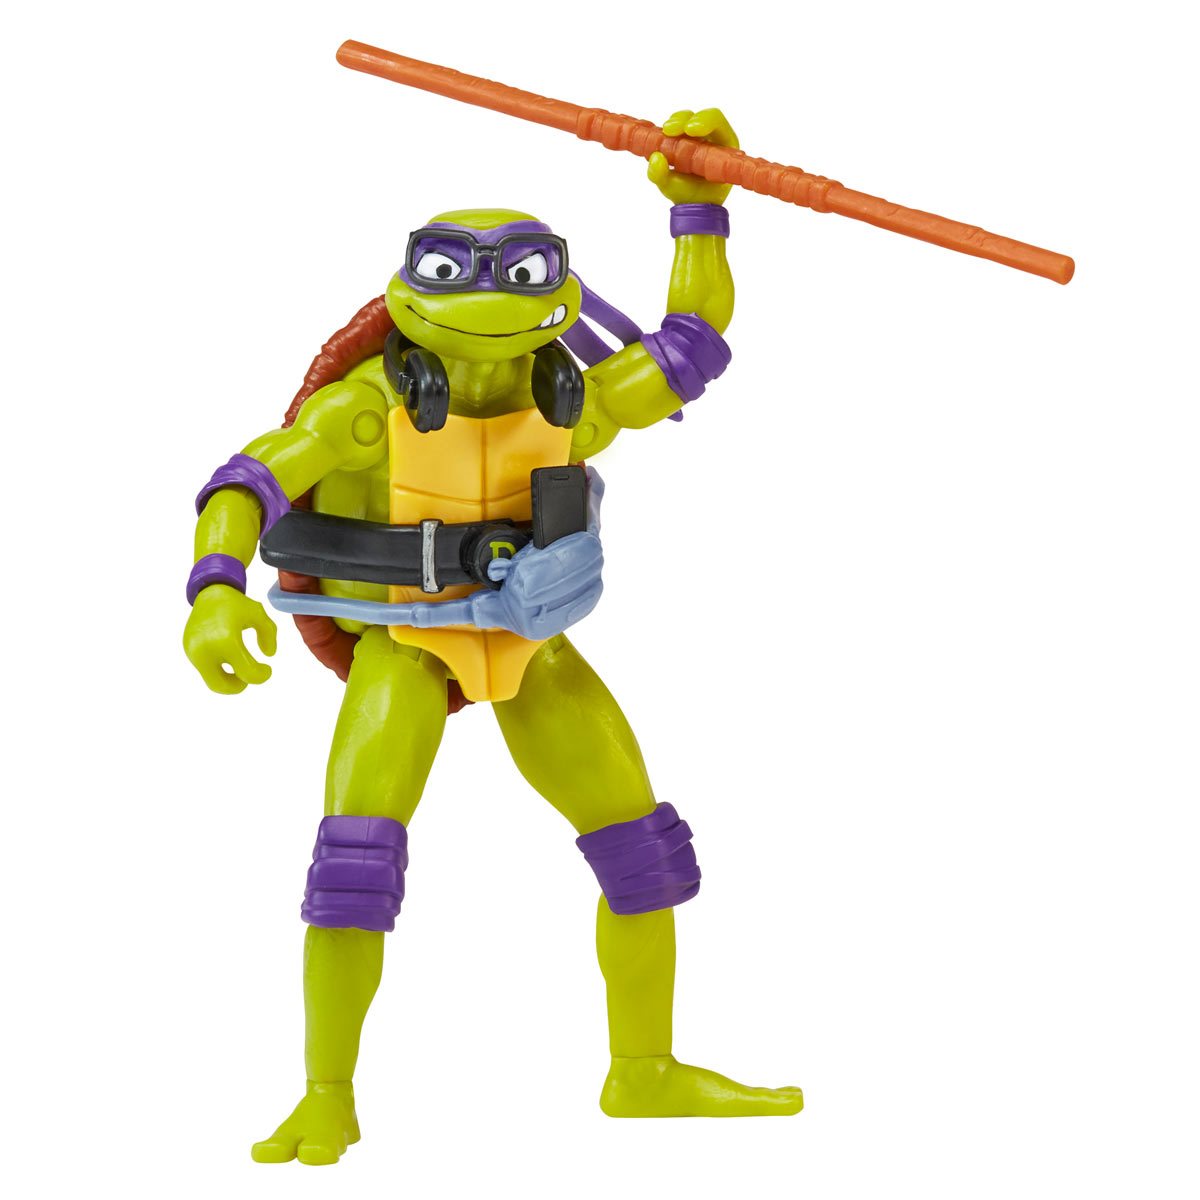 Teenage Mutant Ninja Turtles: Mutant Mayhem Turtle Faces Kids T-Shirt